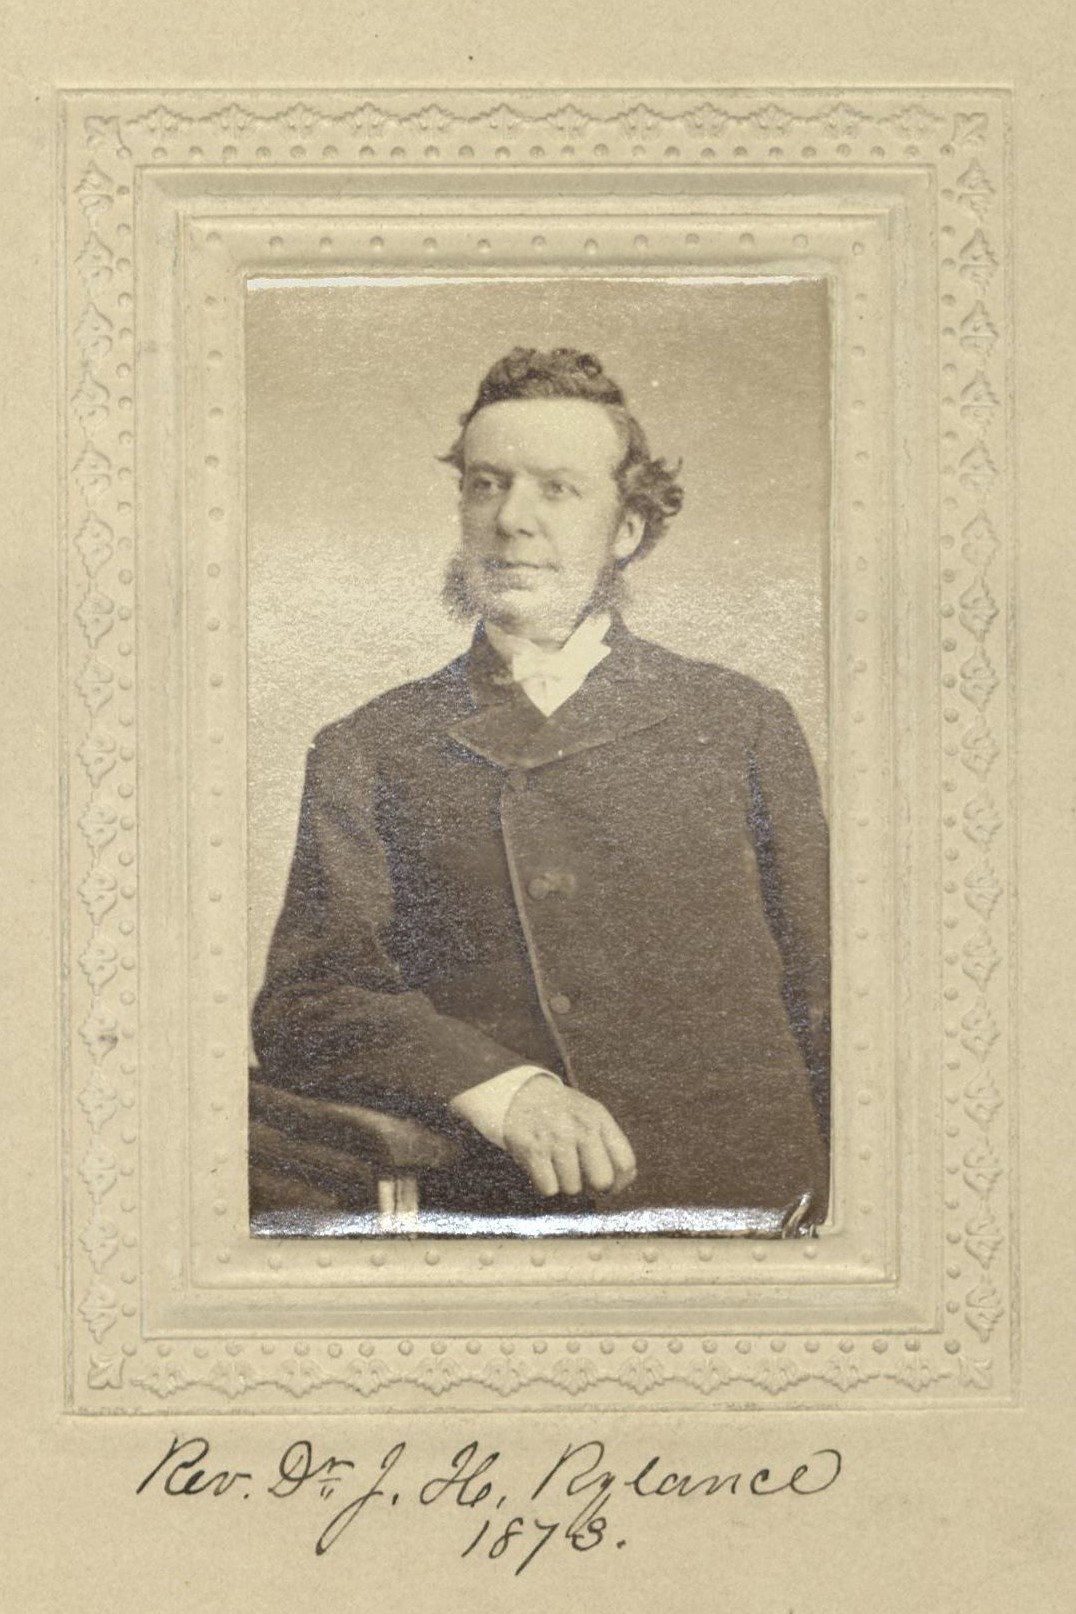 Member portrait of Joseph H. Rylance